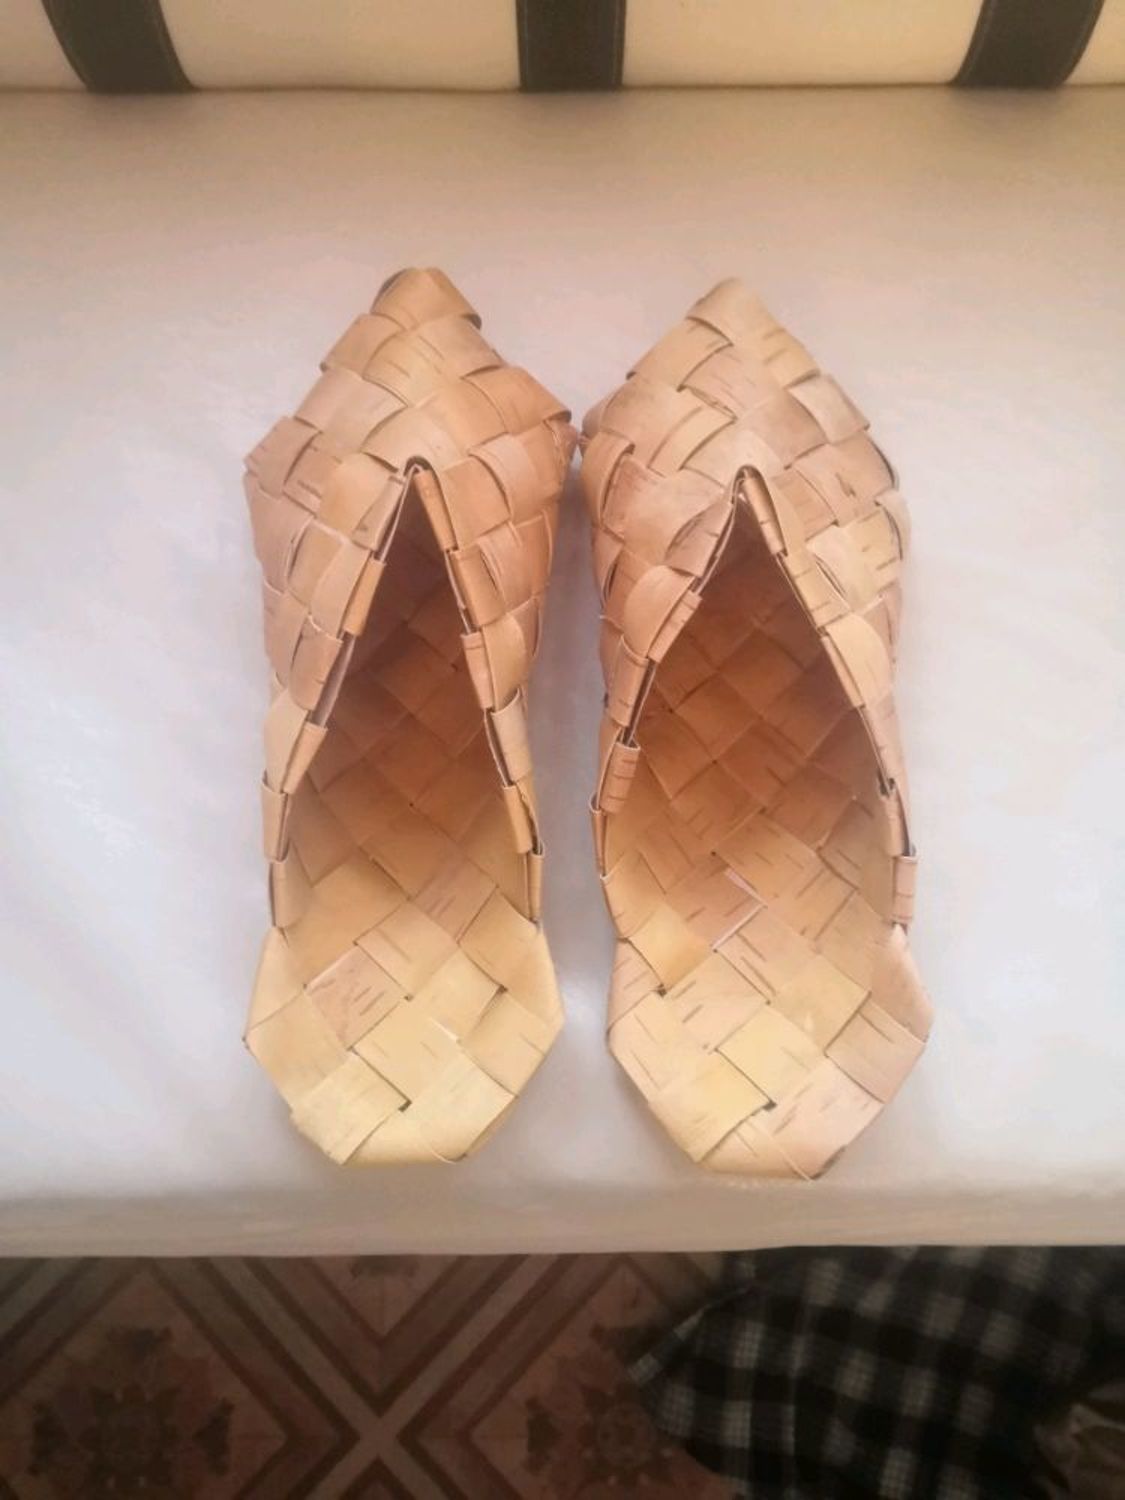 Photo №1 к отзыву покупателя Kodolov Aleksej о товаре Тапки, шлёпки из бересты "треугольные", р-р 36-45. Обувь для бани